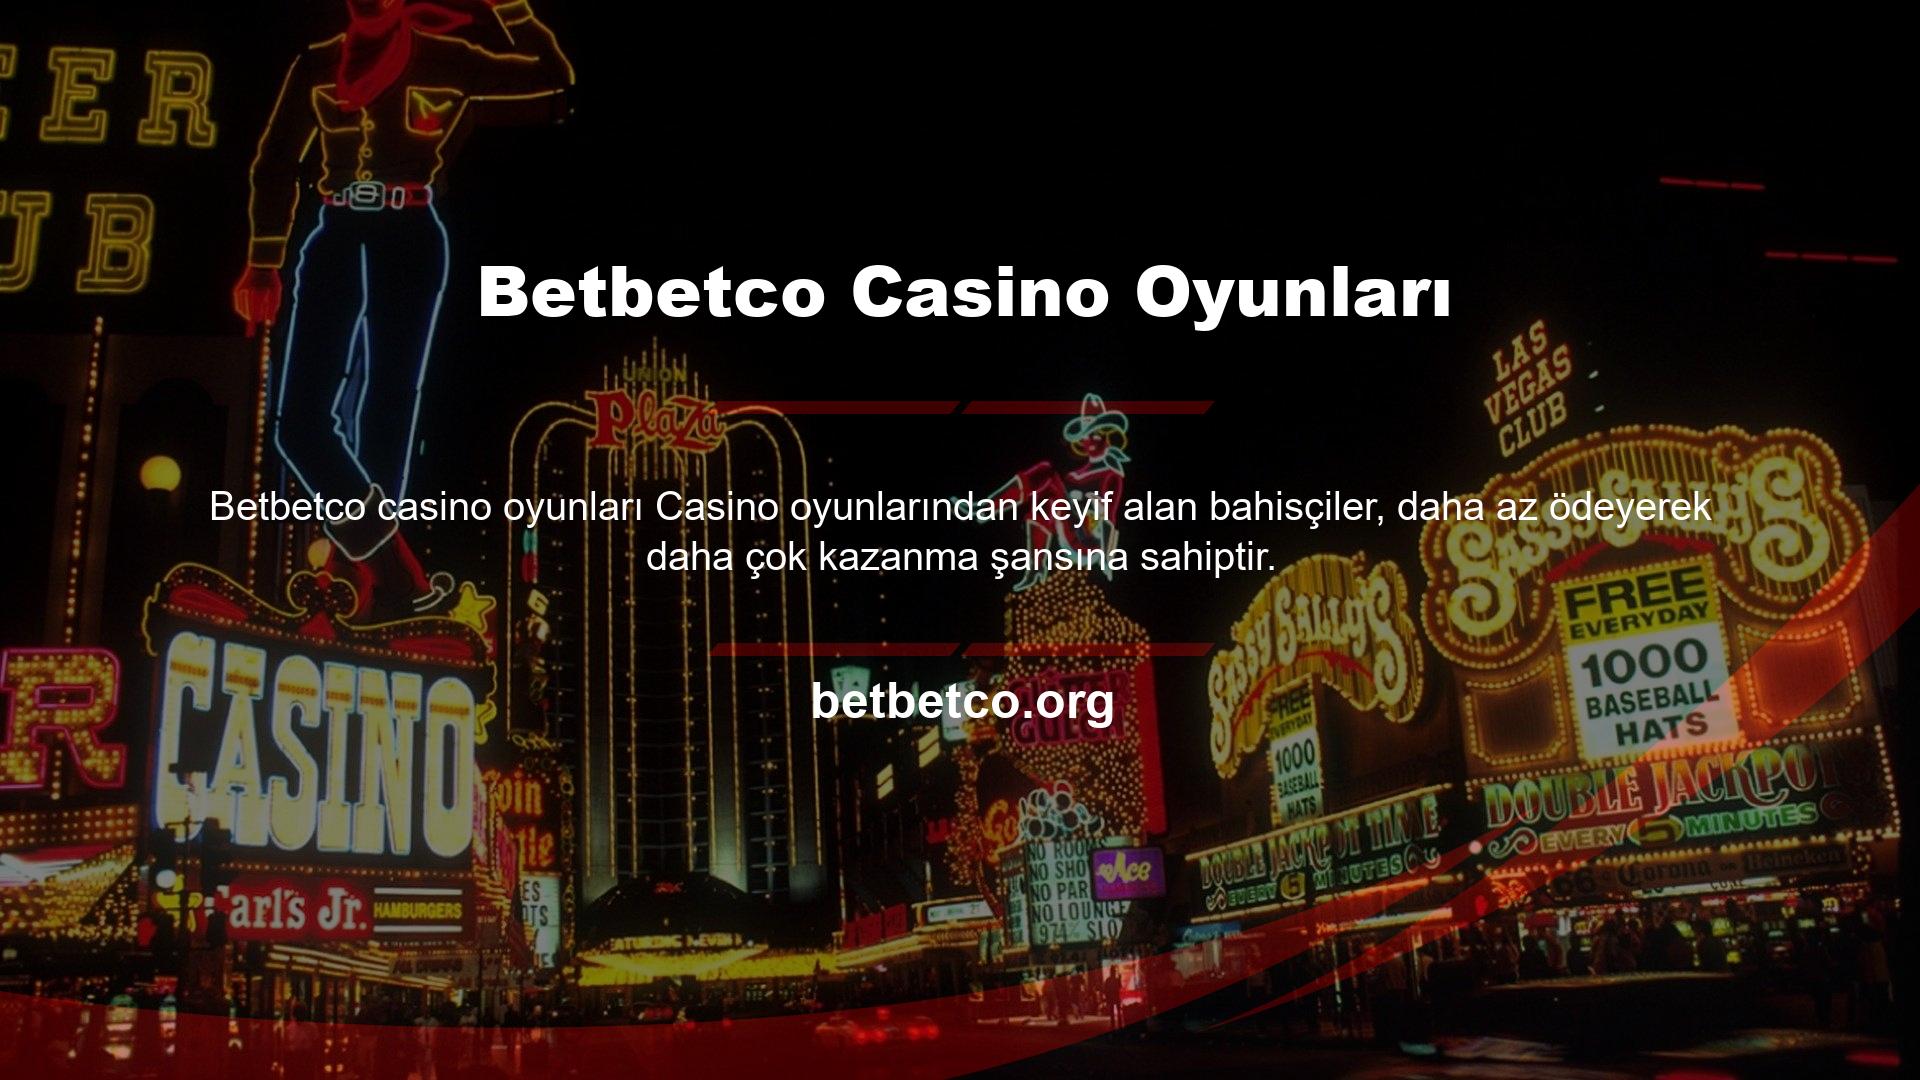 Bu siteye üye olabilir ve Betbetco casino oyunlarını oynayarak para kazanma şansı yakalayabilirsiniz